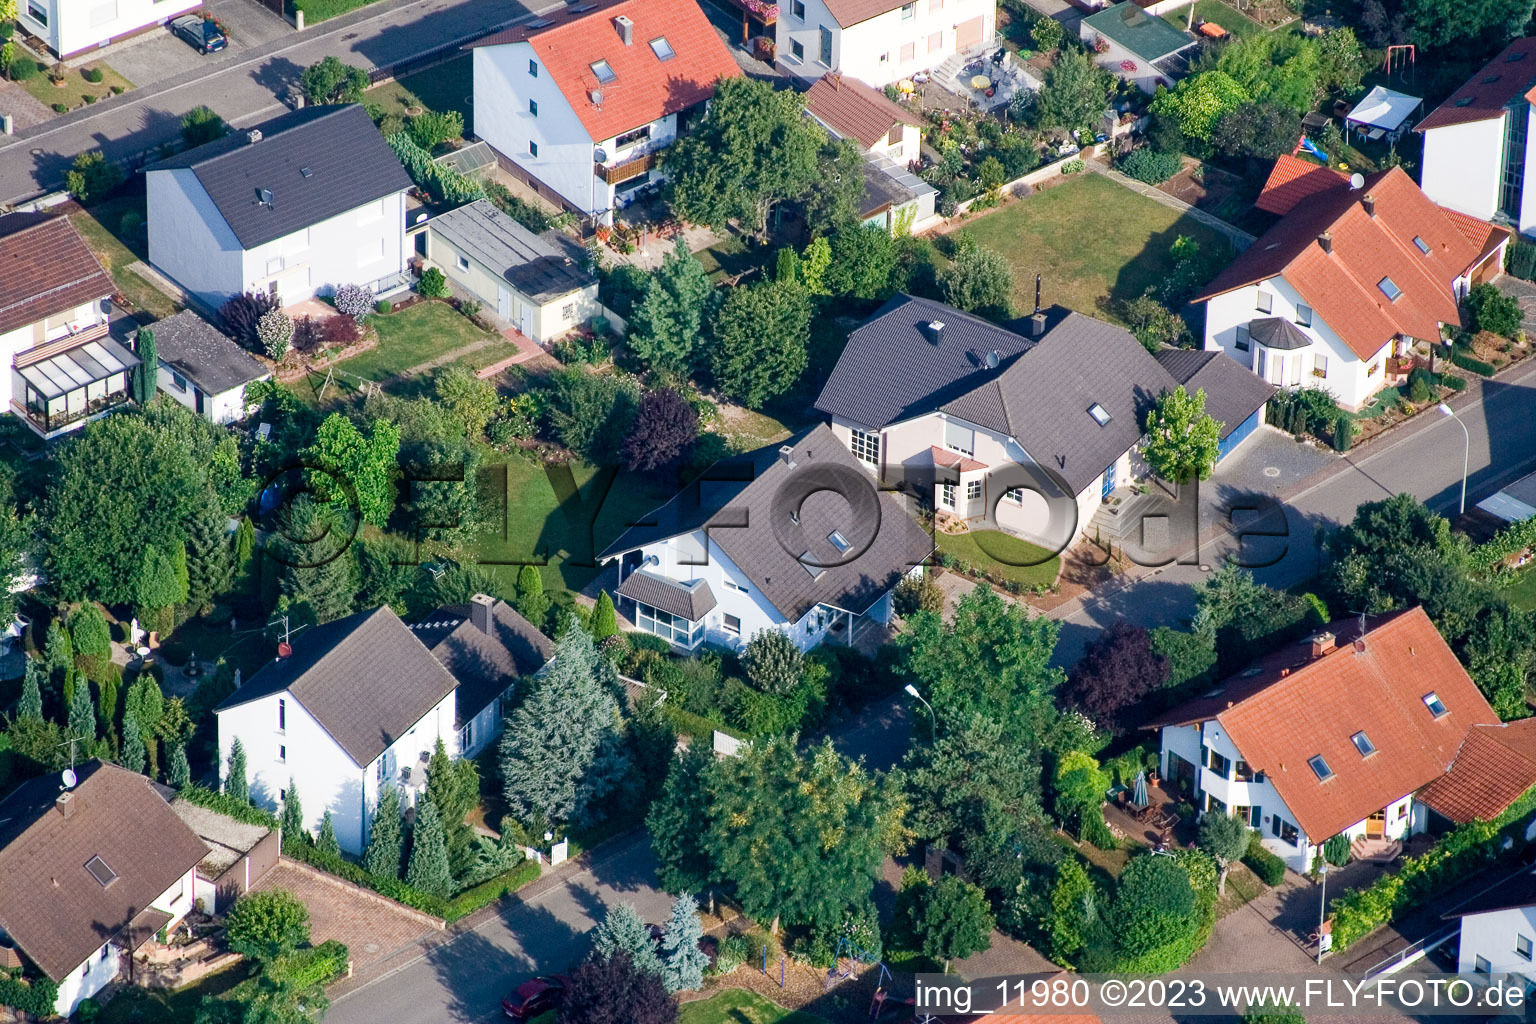 Steinweiler im Bundesland Rheinland-Pfalz, Deutschland aus der Drohnenperspektive